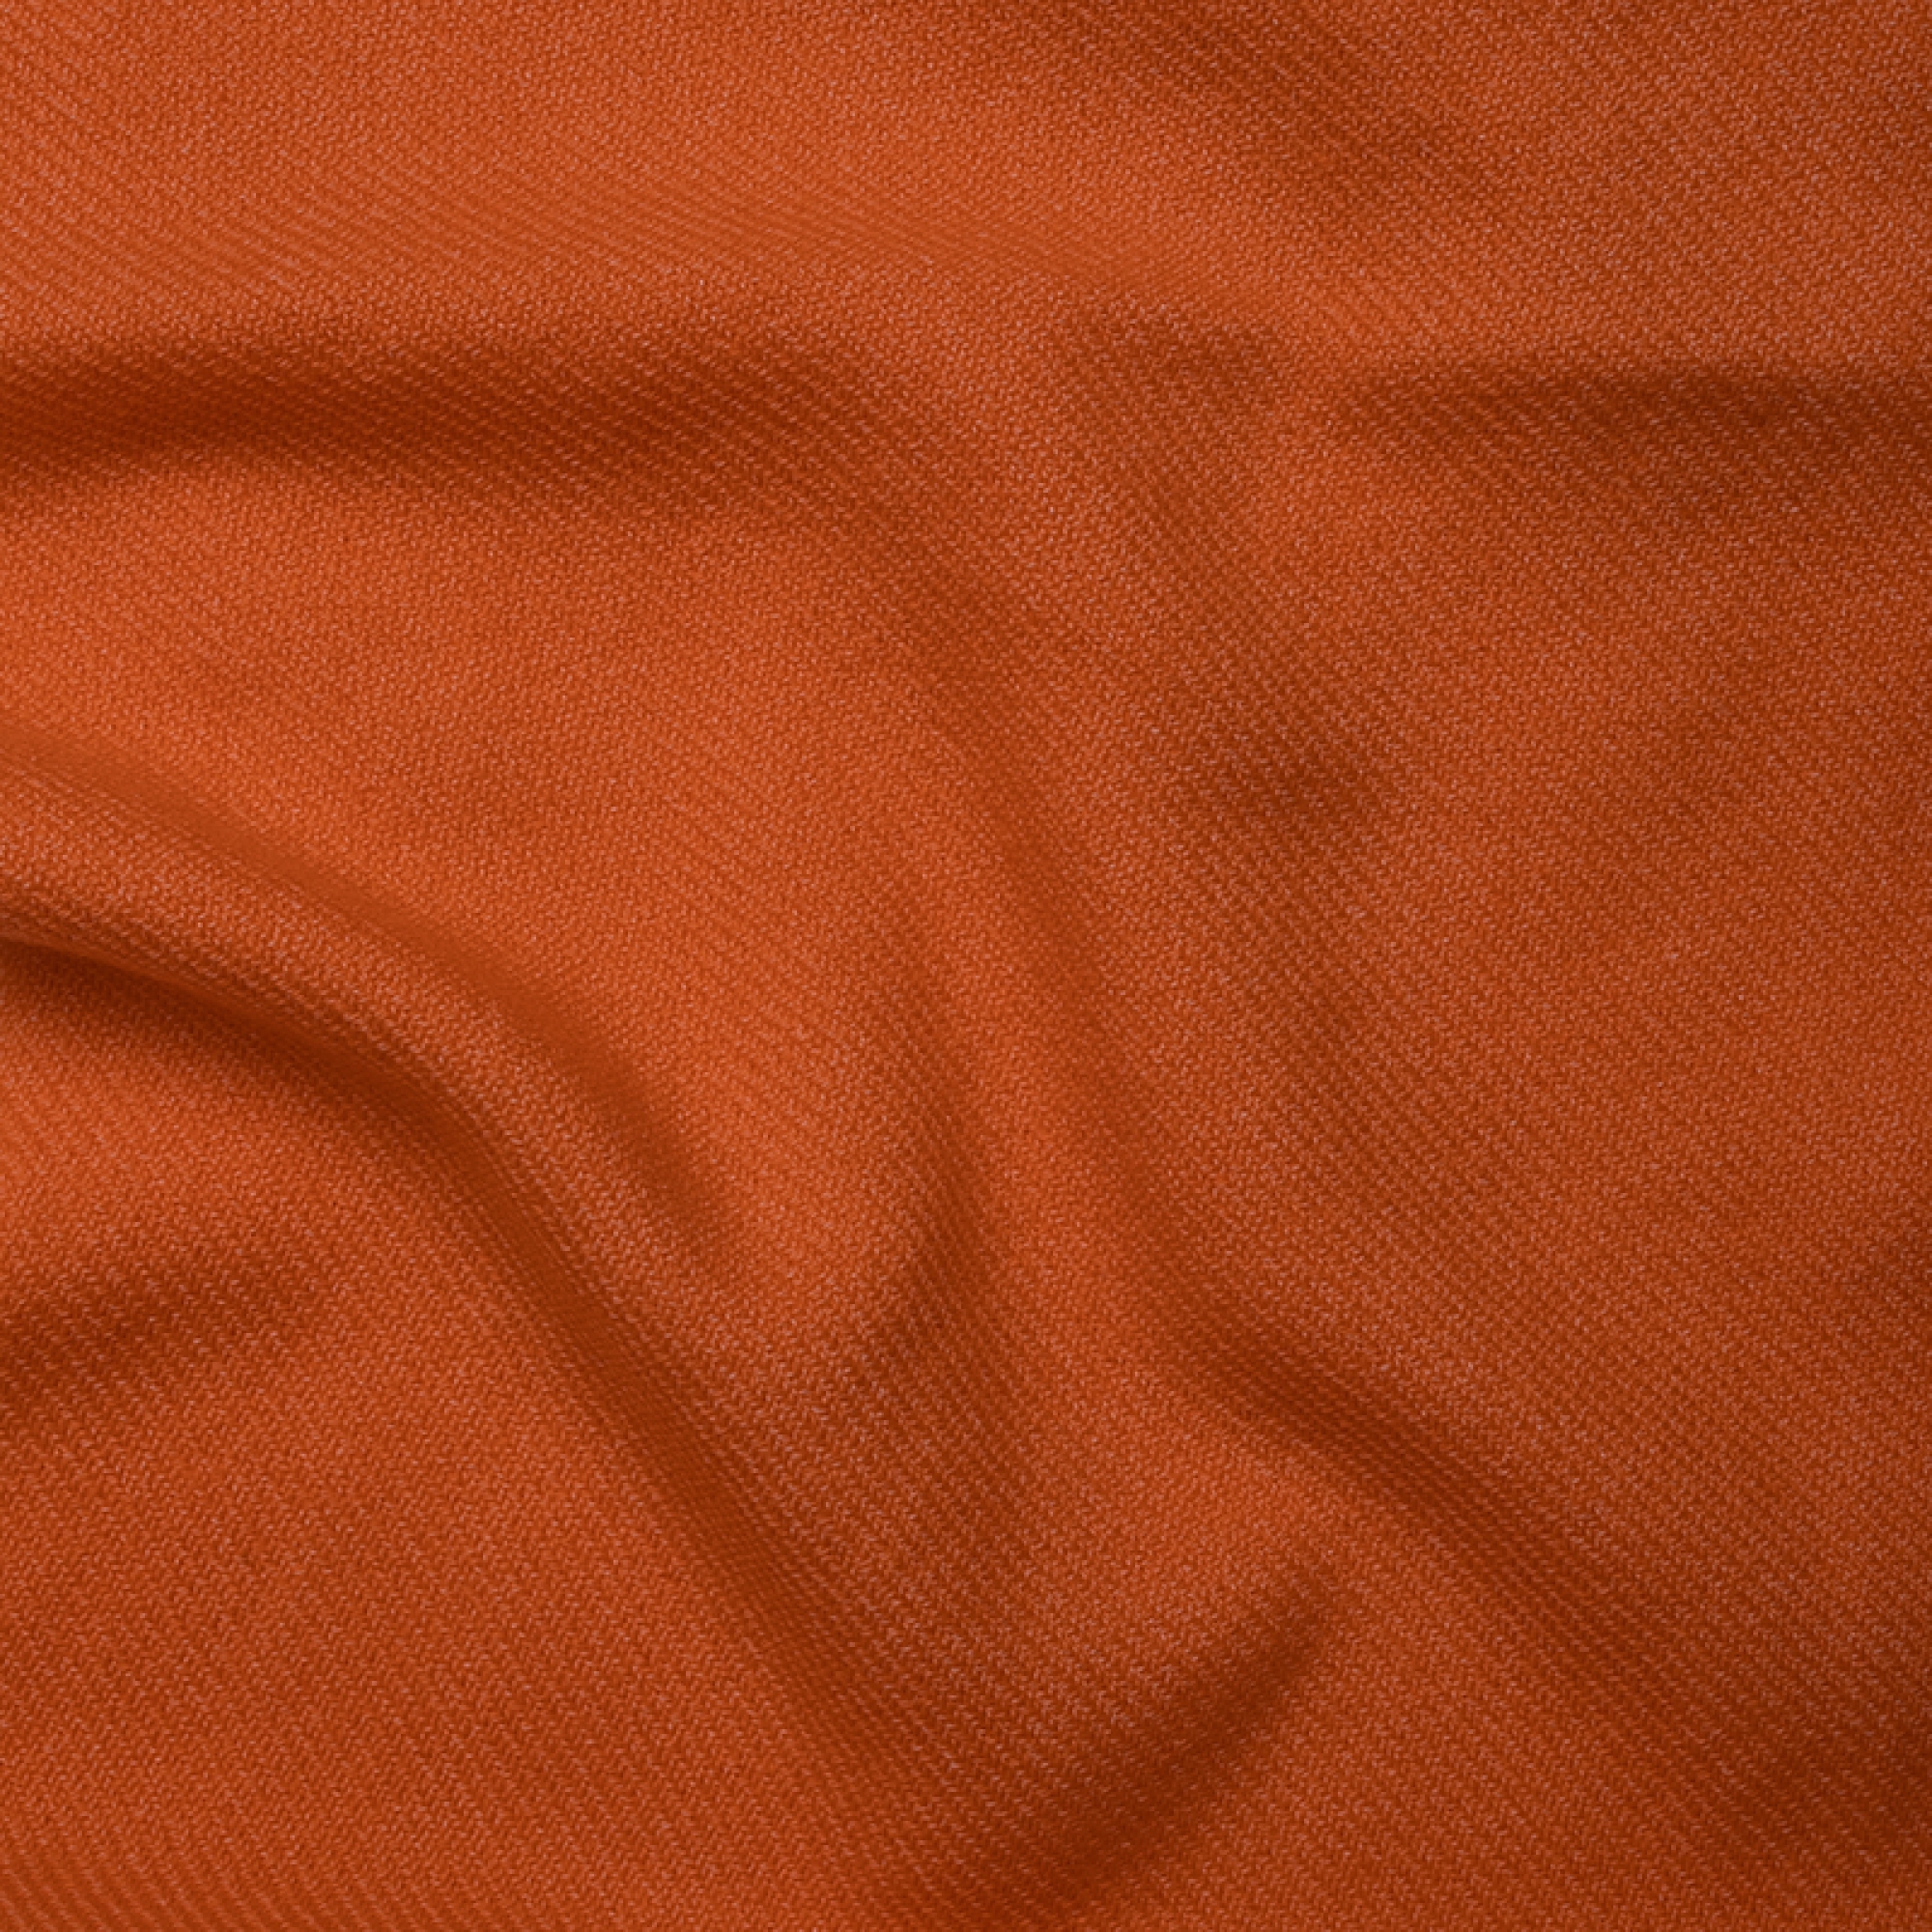 Cashmere accessori cocooning toodoo plain m 180 x 220 arancio 180 x 220 cm